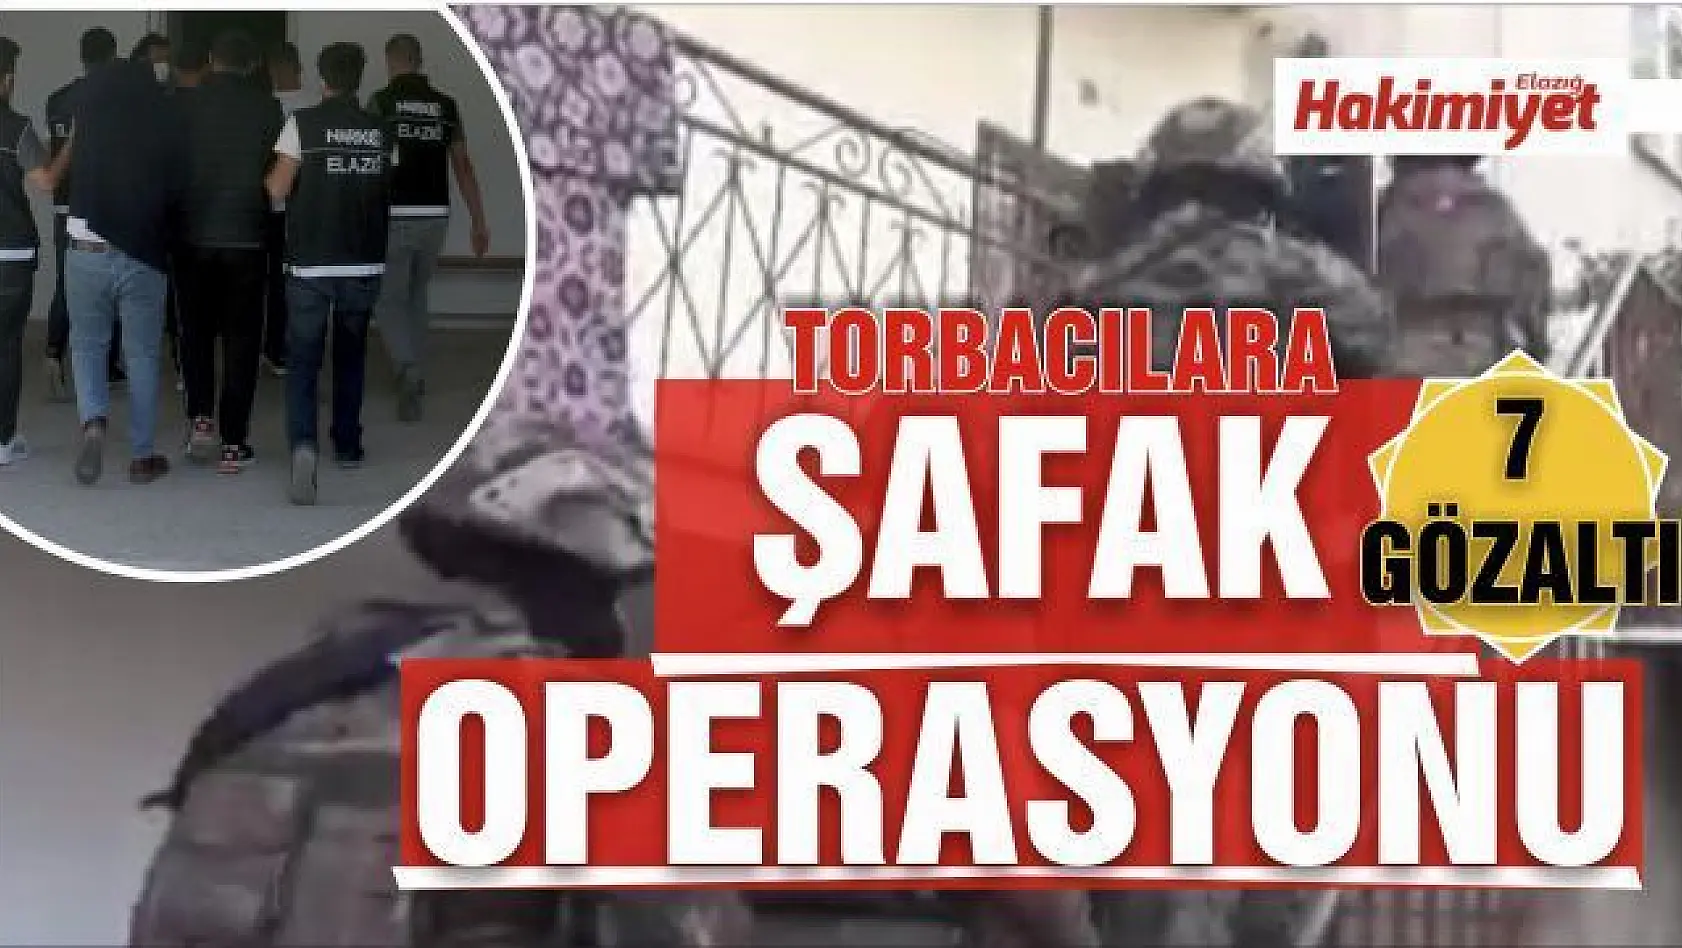 Elazığ'da torbacılara şafak operasyonu: 7 gözaltı